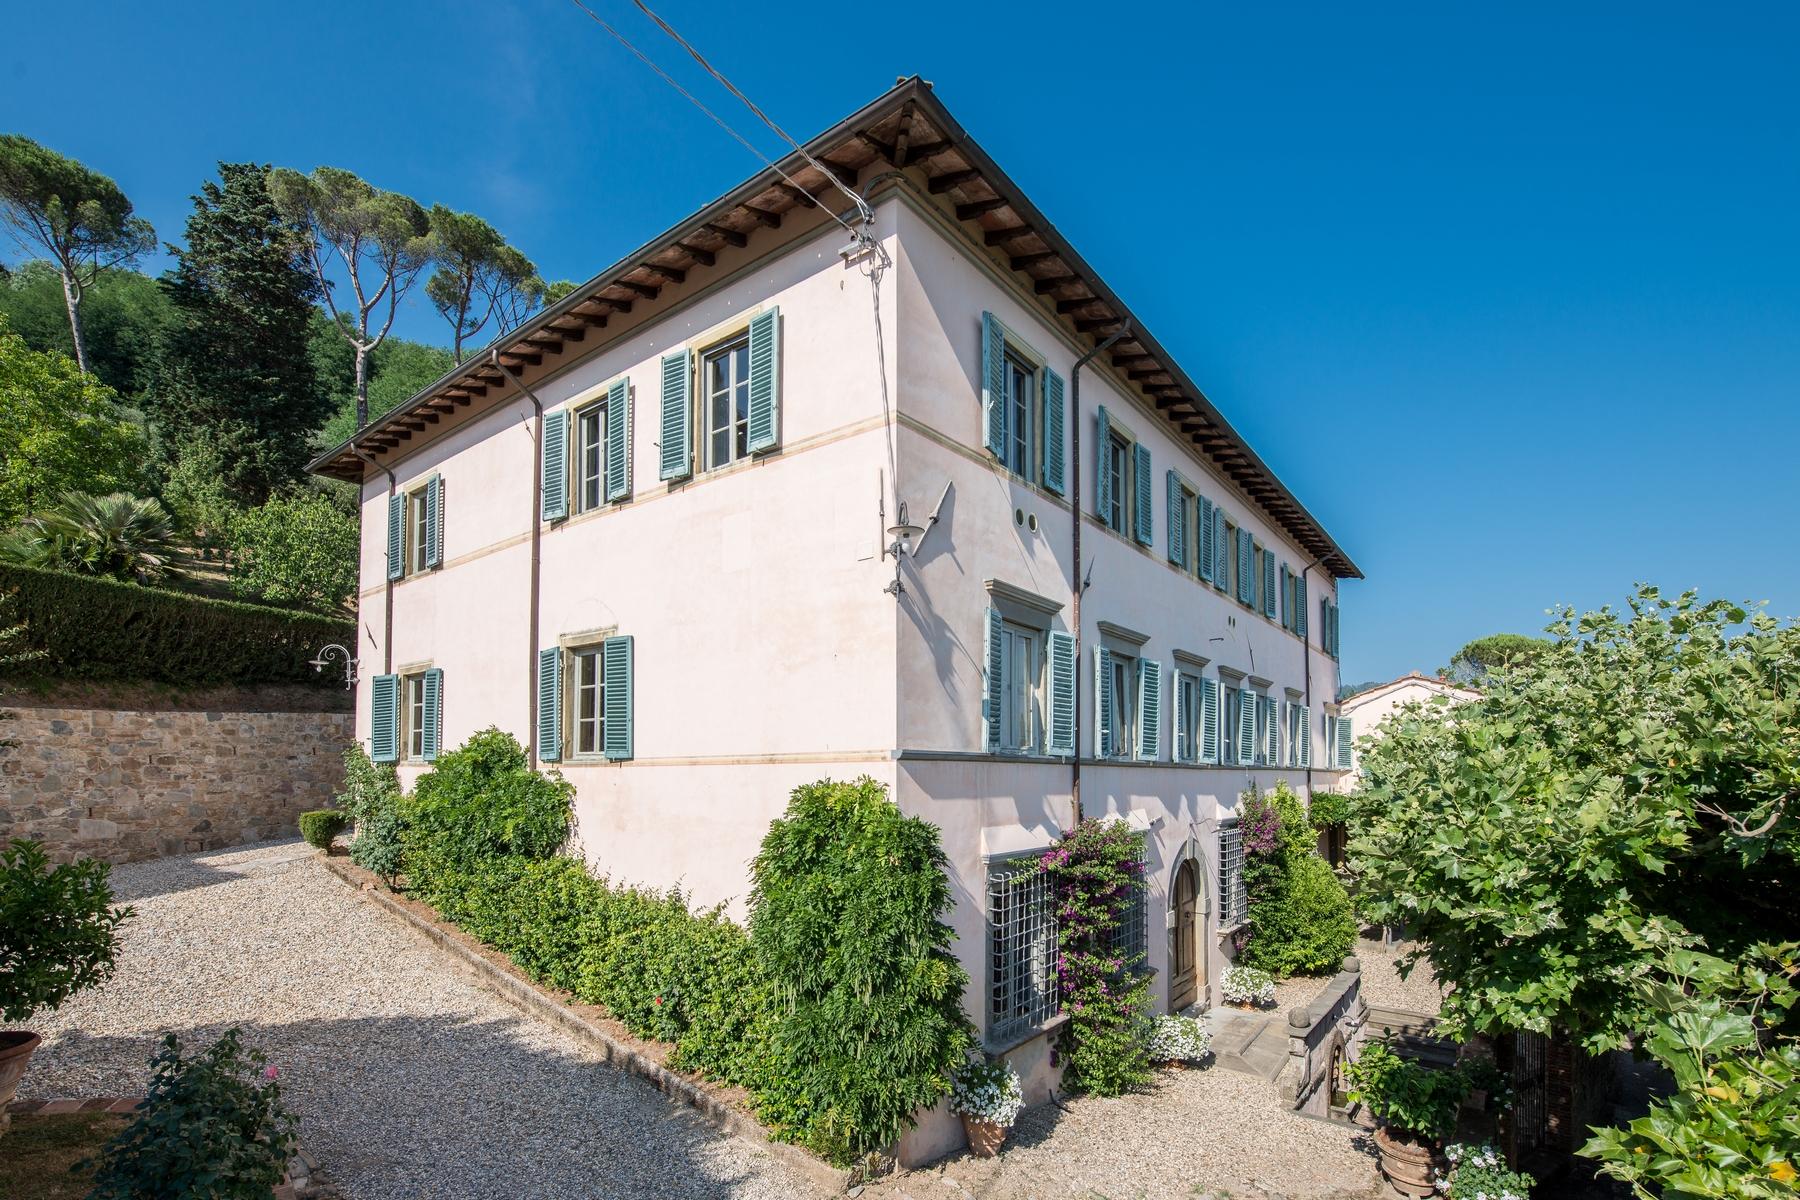 Splendida villa del 1700 nei pressi di Lucca - 1